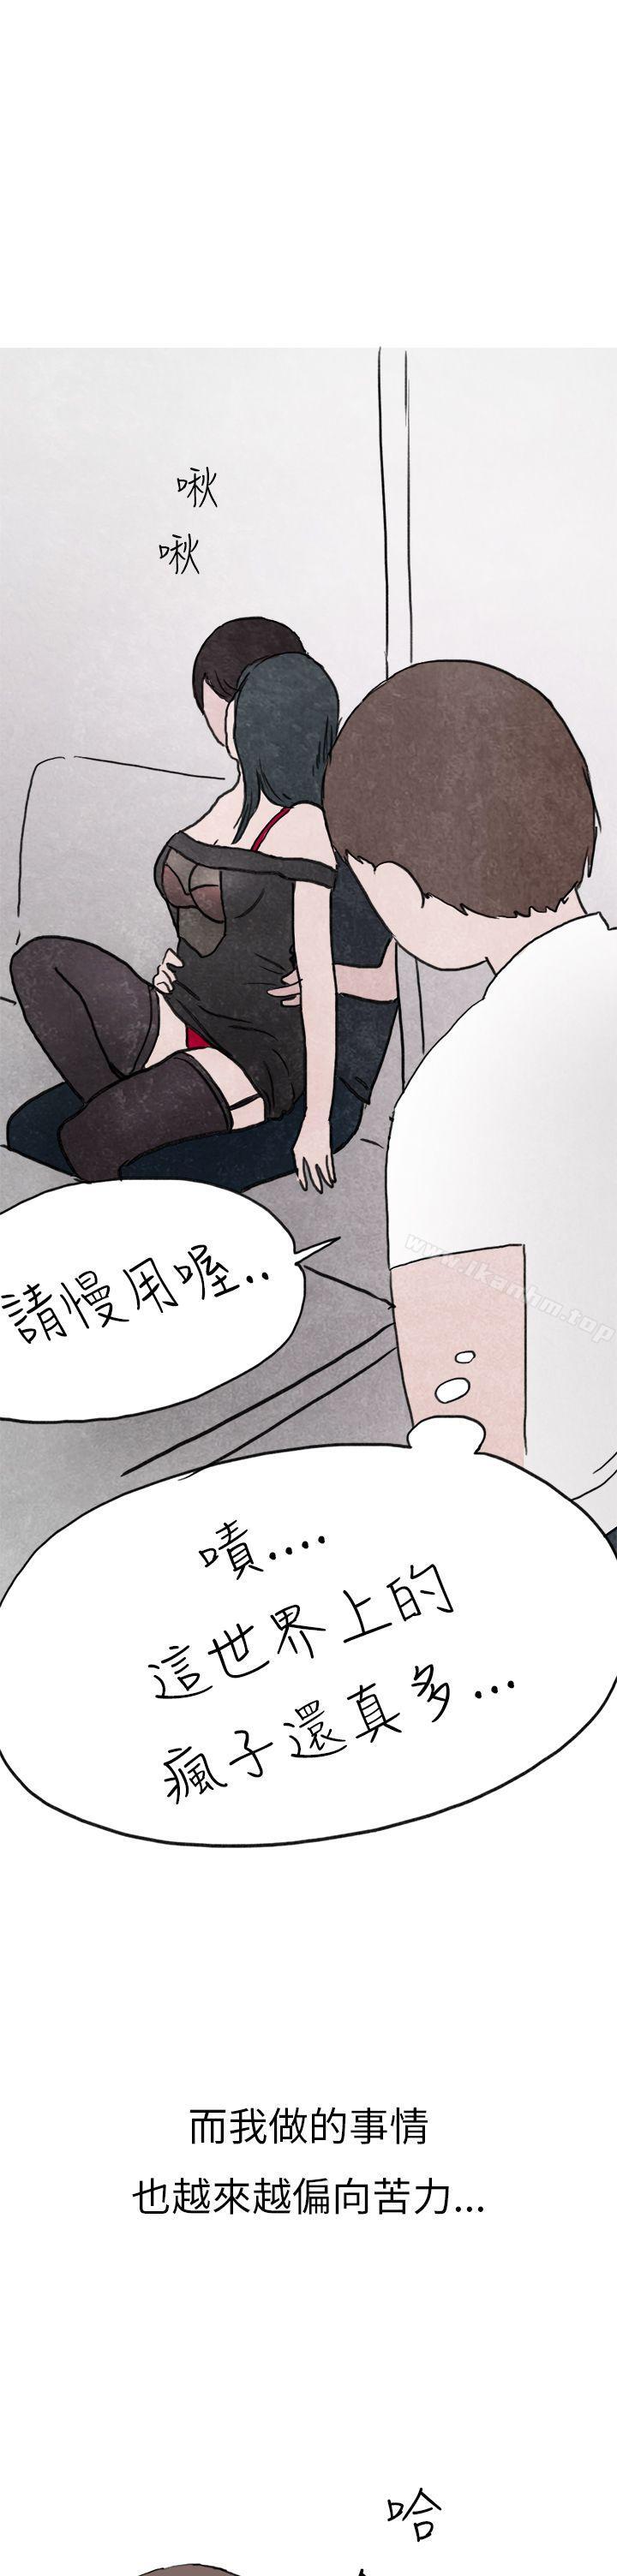 漫画韩国 秘密Story第二季   - 立即阅读 第二季 啤酒屋冷漠的女同事(上)第18漫画图片